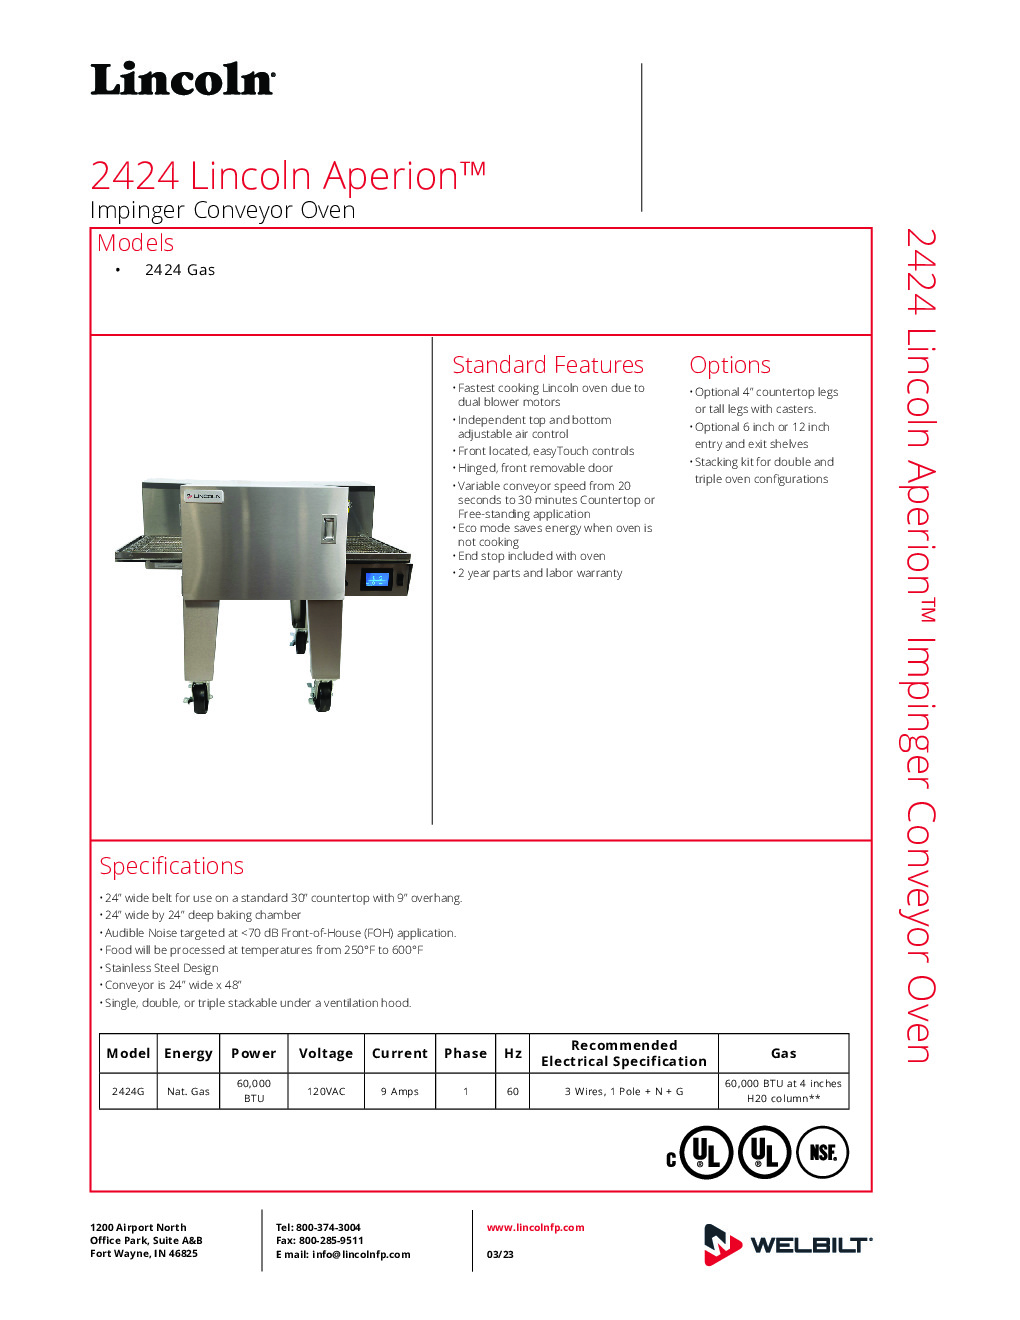 Lincoln 2424G-0002 Conveyor Gas Oven